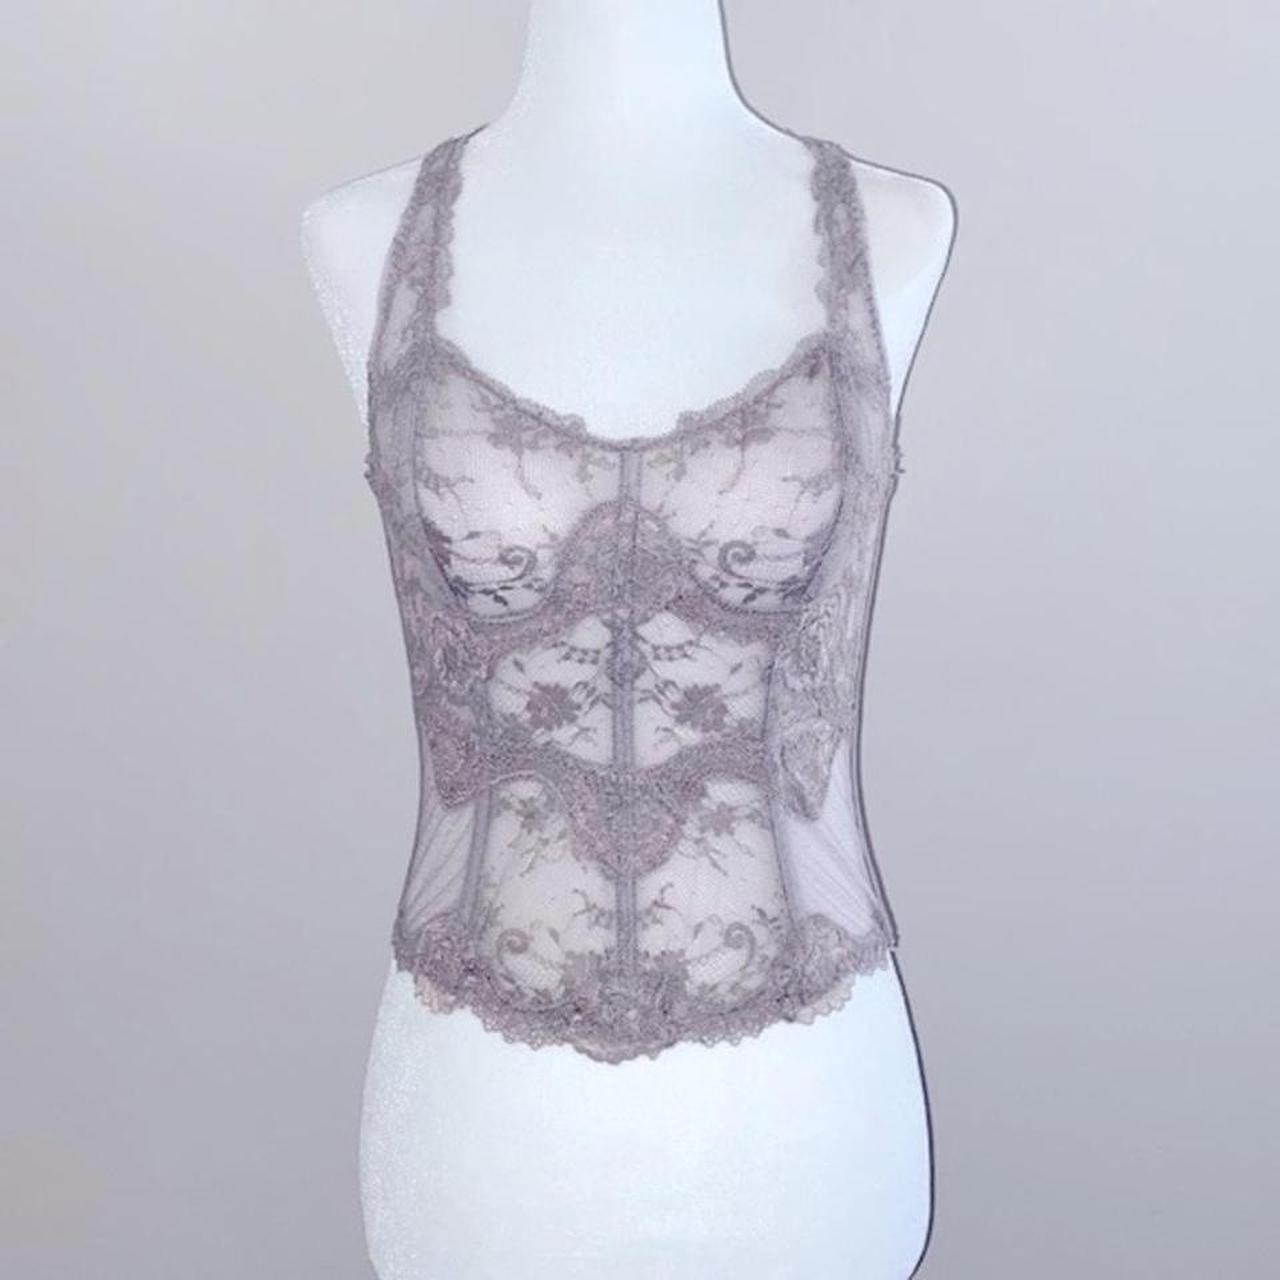 Victoria's Secret Dream angels lace unlined corset - Depop